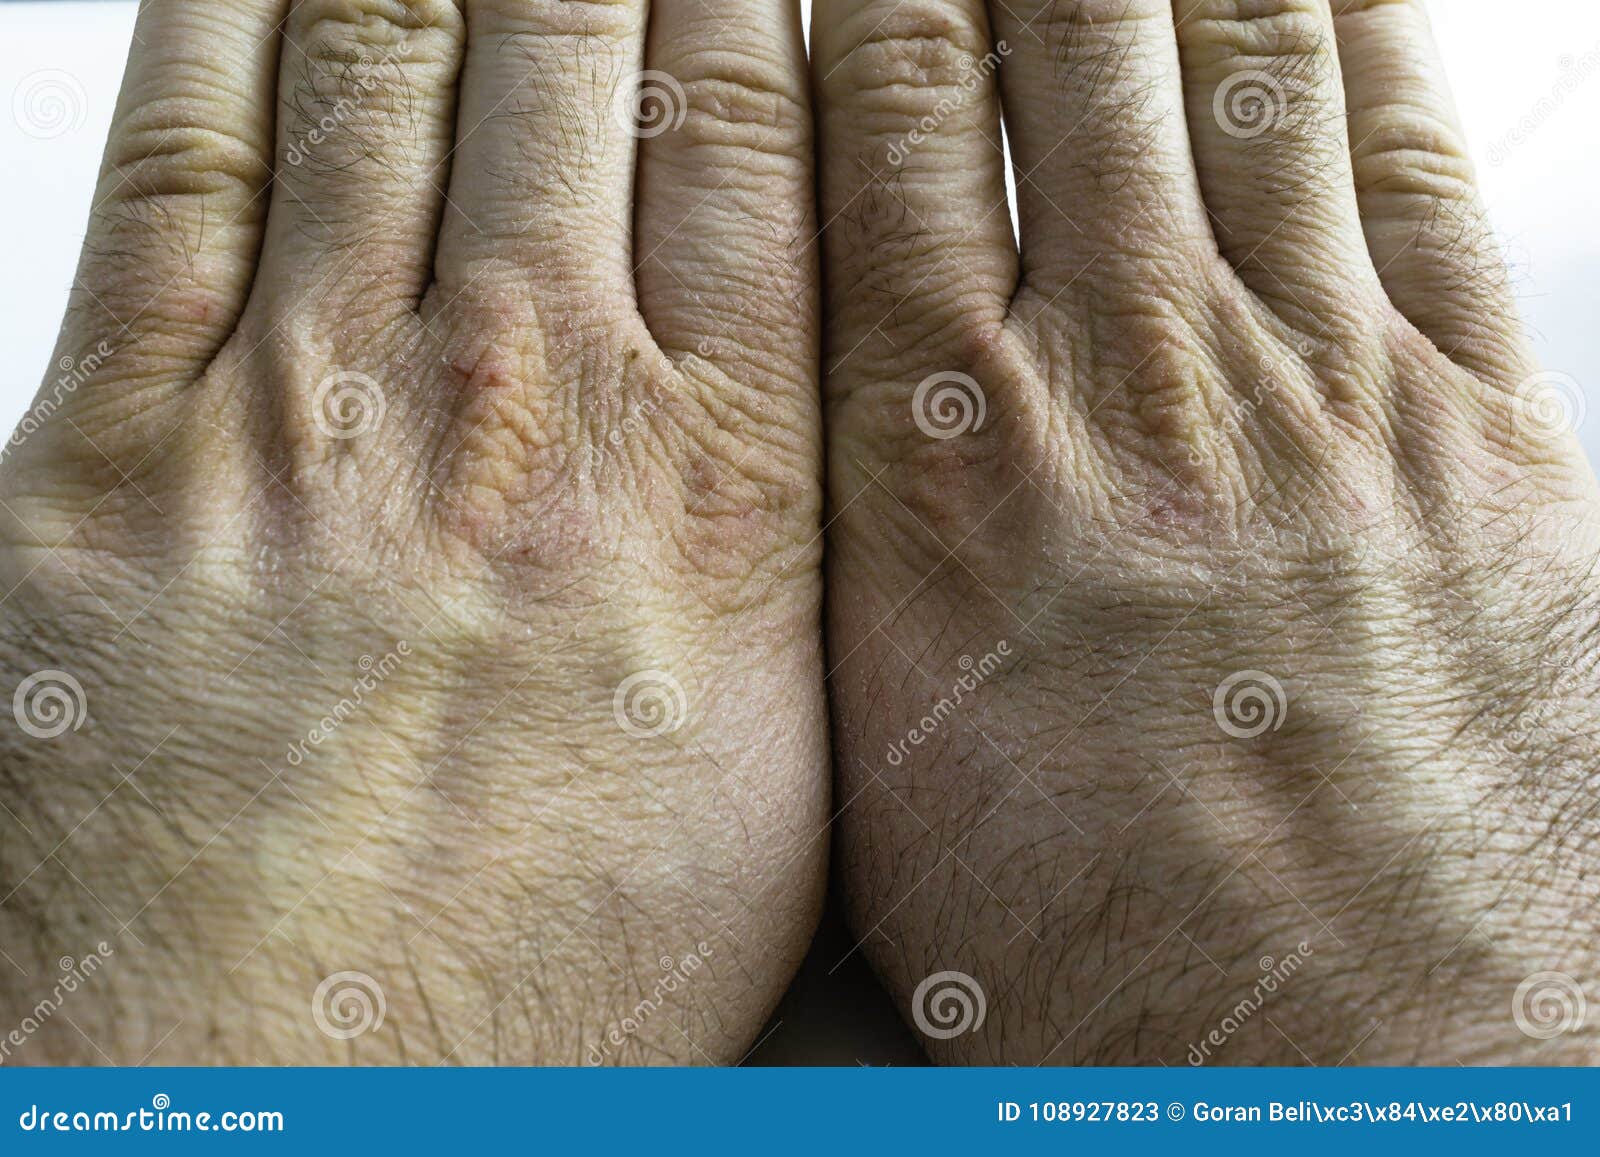 гангрена пальцев рук фото